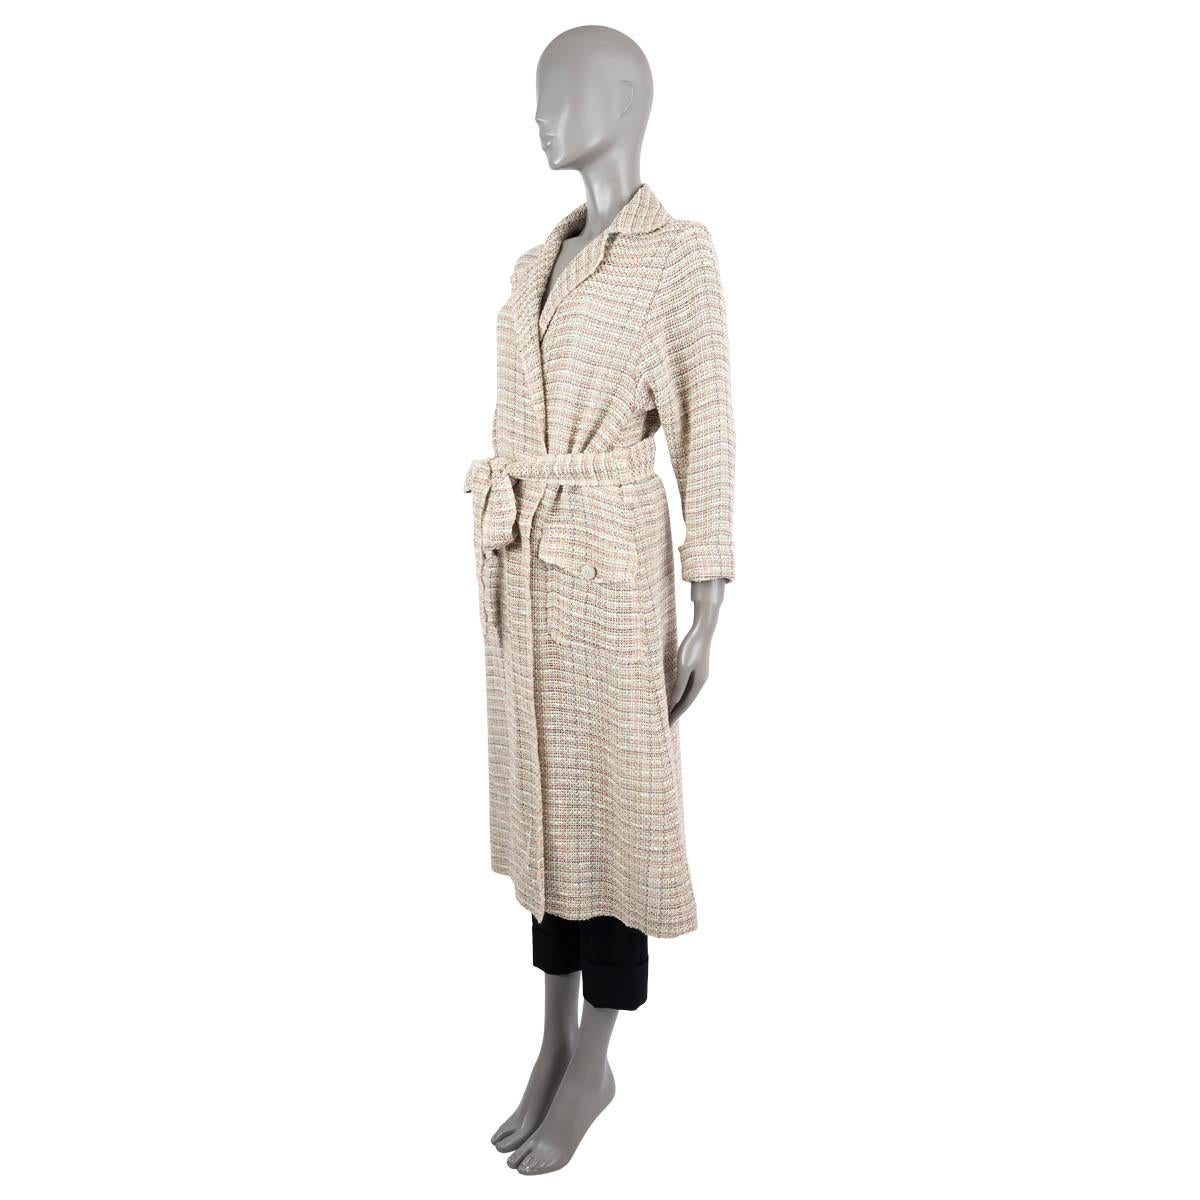 Manteau en tweed 100% authentique de Chanel en coton (45%), lin (27%), nylon (14%) beige, ivoire, vert et corail  et l'acrylique (14%). Deux poches à rabat avec boutons métalliques gravés du logo. Il se ferme par une ceinture assortie et est doublé